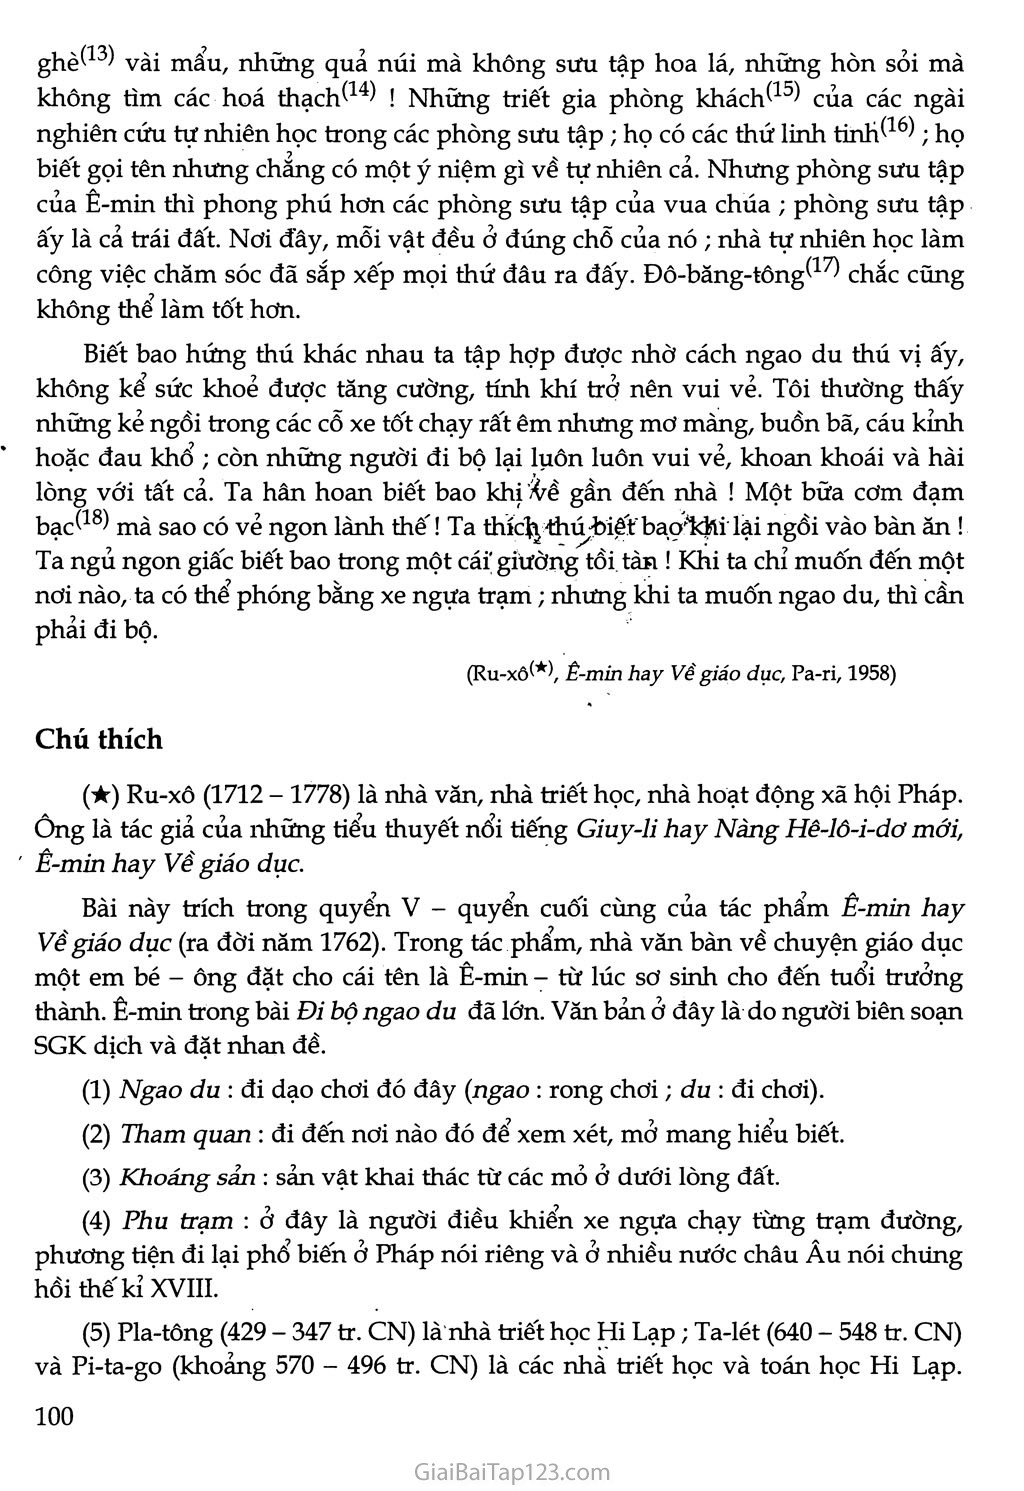 Đi bộ ngao du (trích Ê-mỉn hay về giáo dục) trang 3